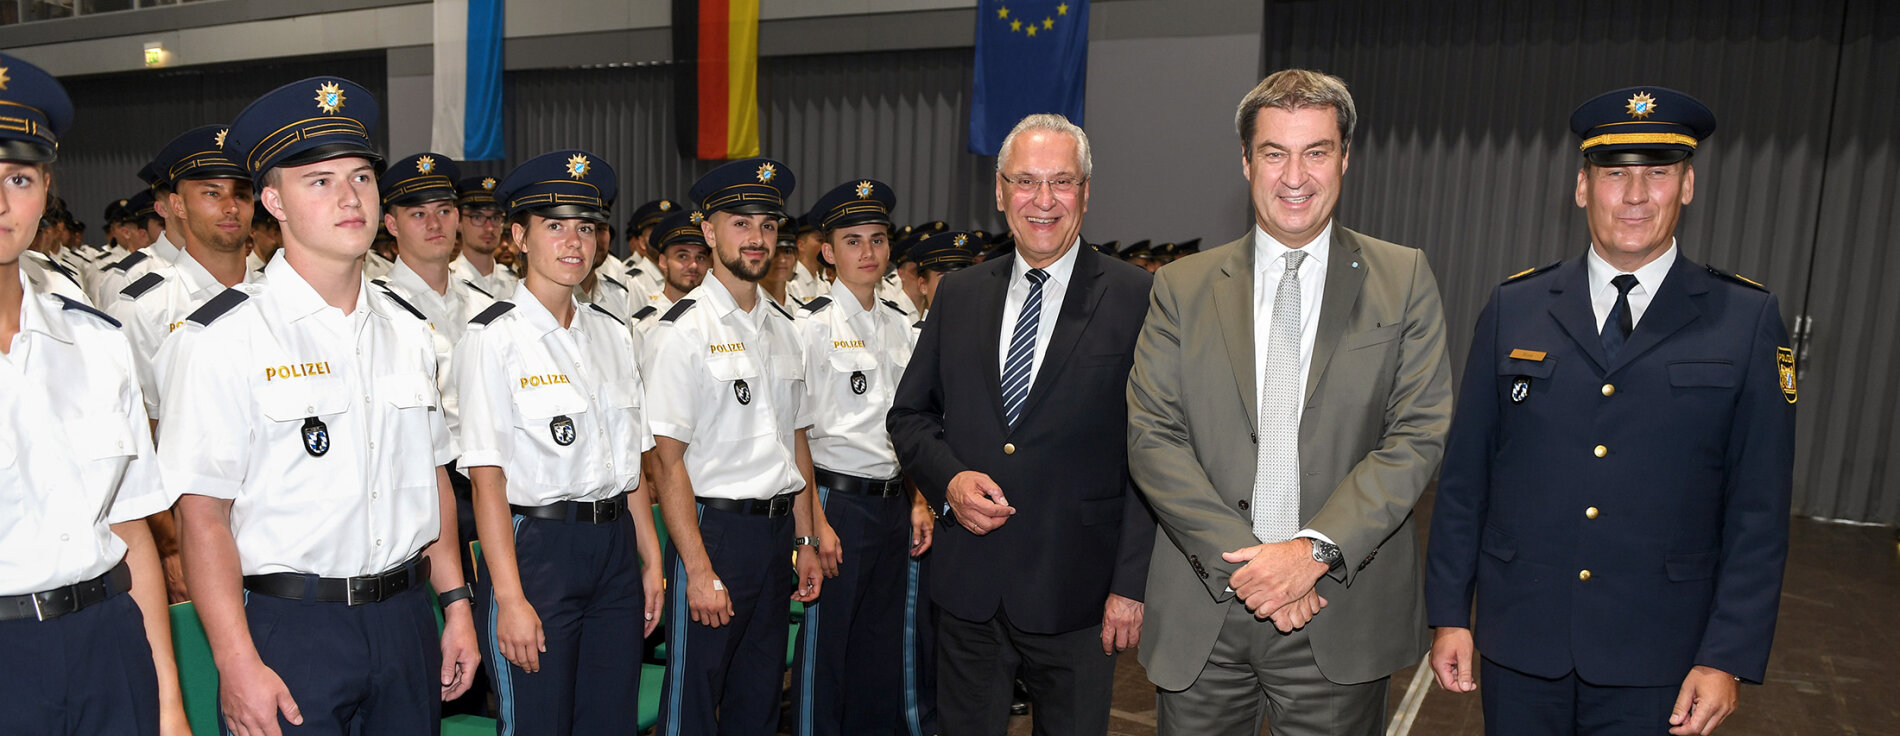 Innenminister Joachim Herrmann neben Ministerpräsident Dr. Markus Söder und Polizeibeamter neben vereidigten Polizistinnen und Polizisten